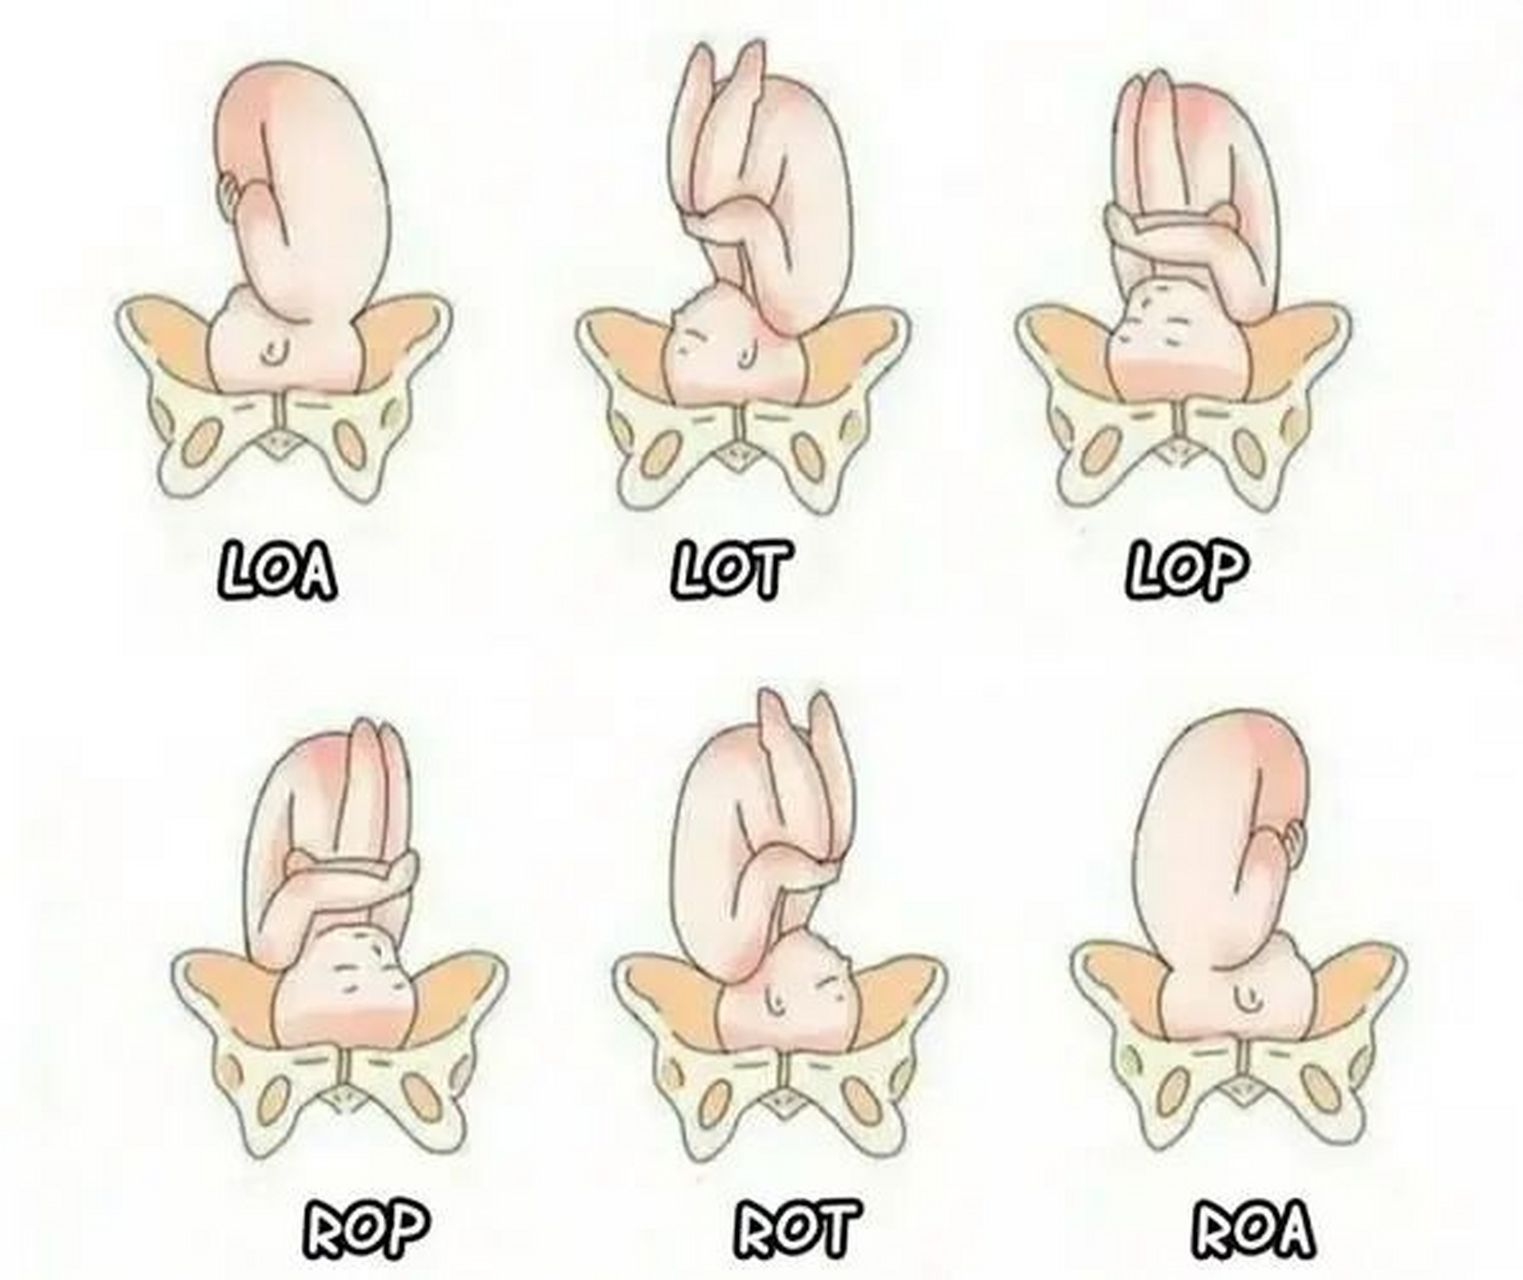 胎先露的六种方位图图片